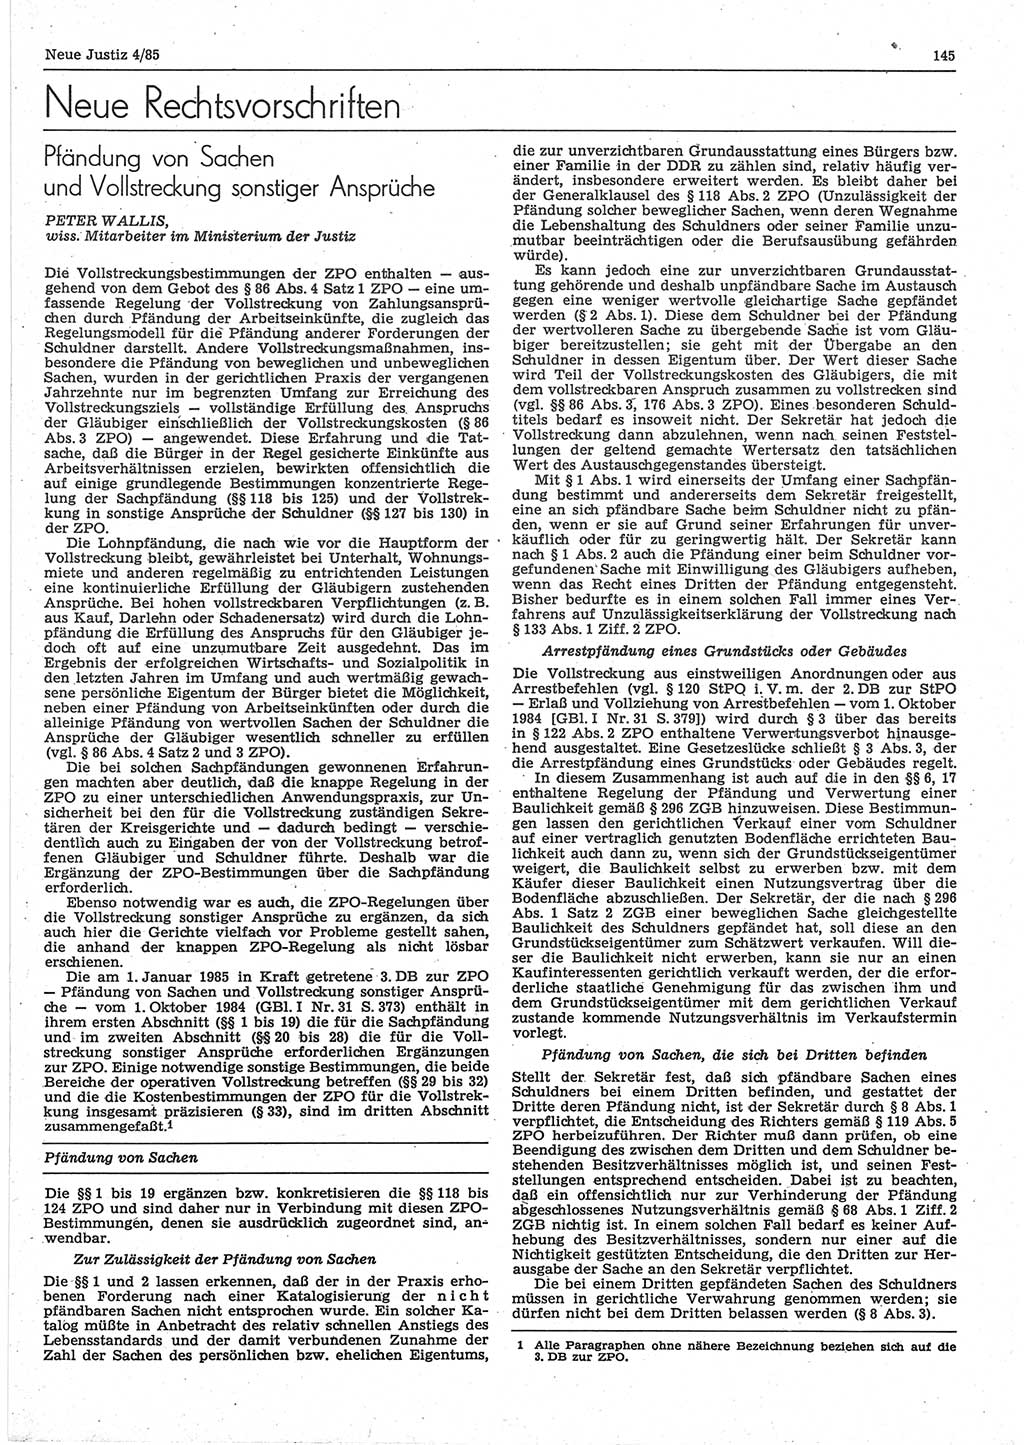 Neue Justiz (NJ), Zeitschrift für sozialistisches Recht und Gesetzlichkeit [Deutsche Demokratische Republik (DDR)], 39. Jahrgang 1985, Seite 145 (NJ DDR 1985, S. 145)